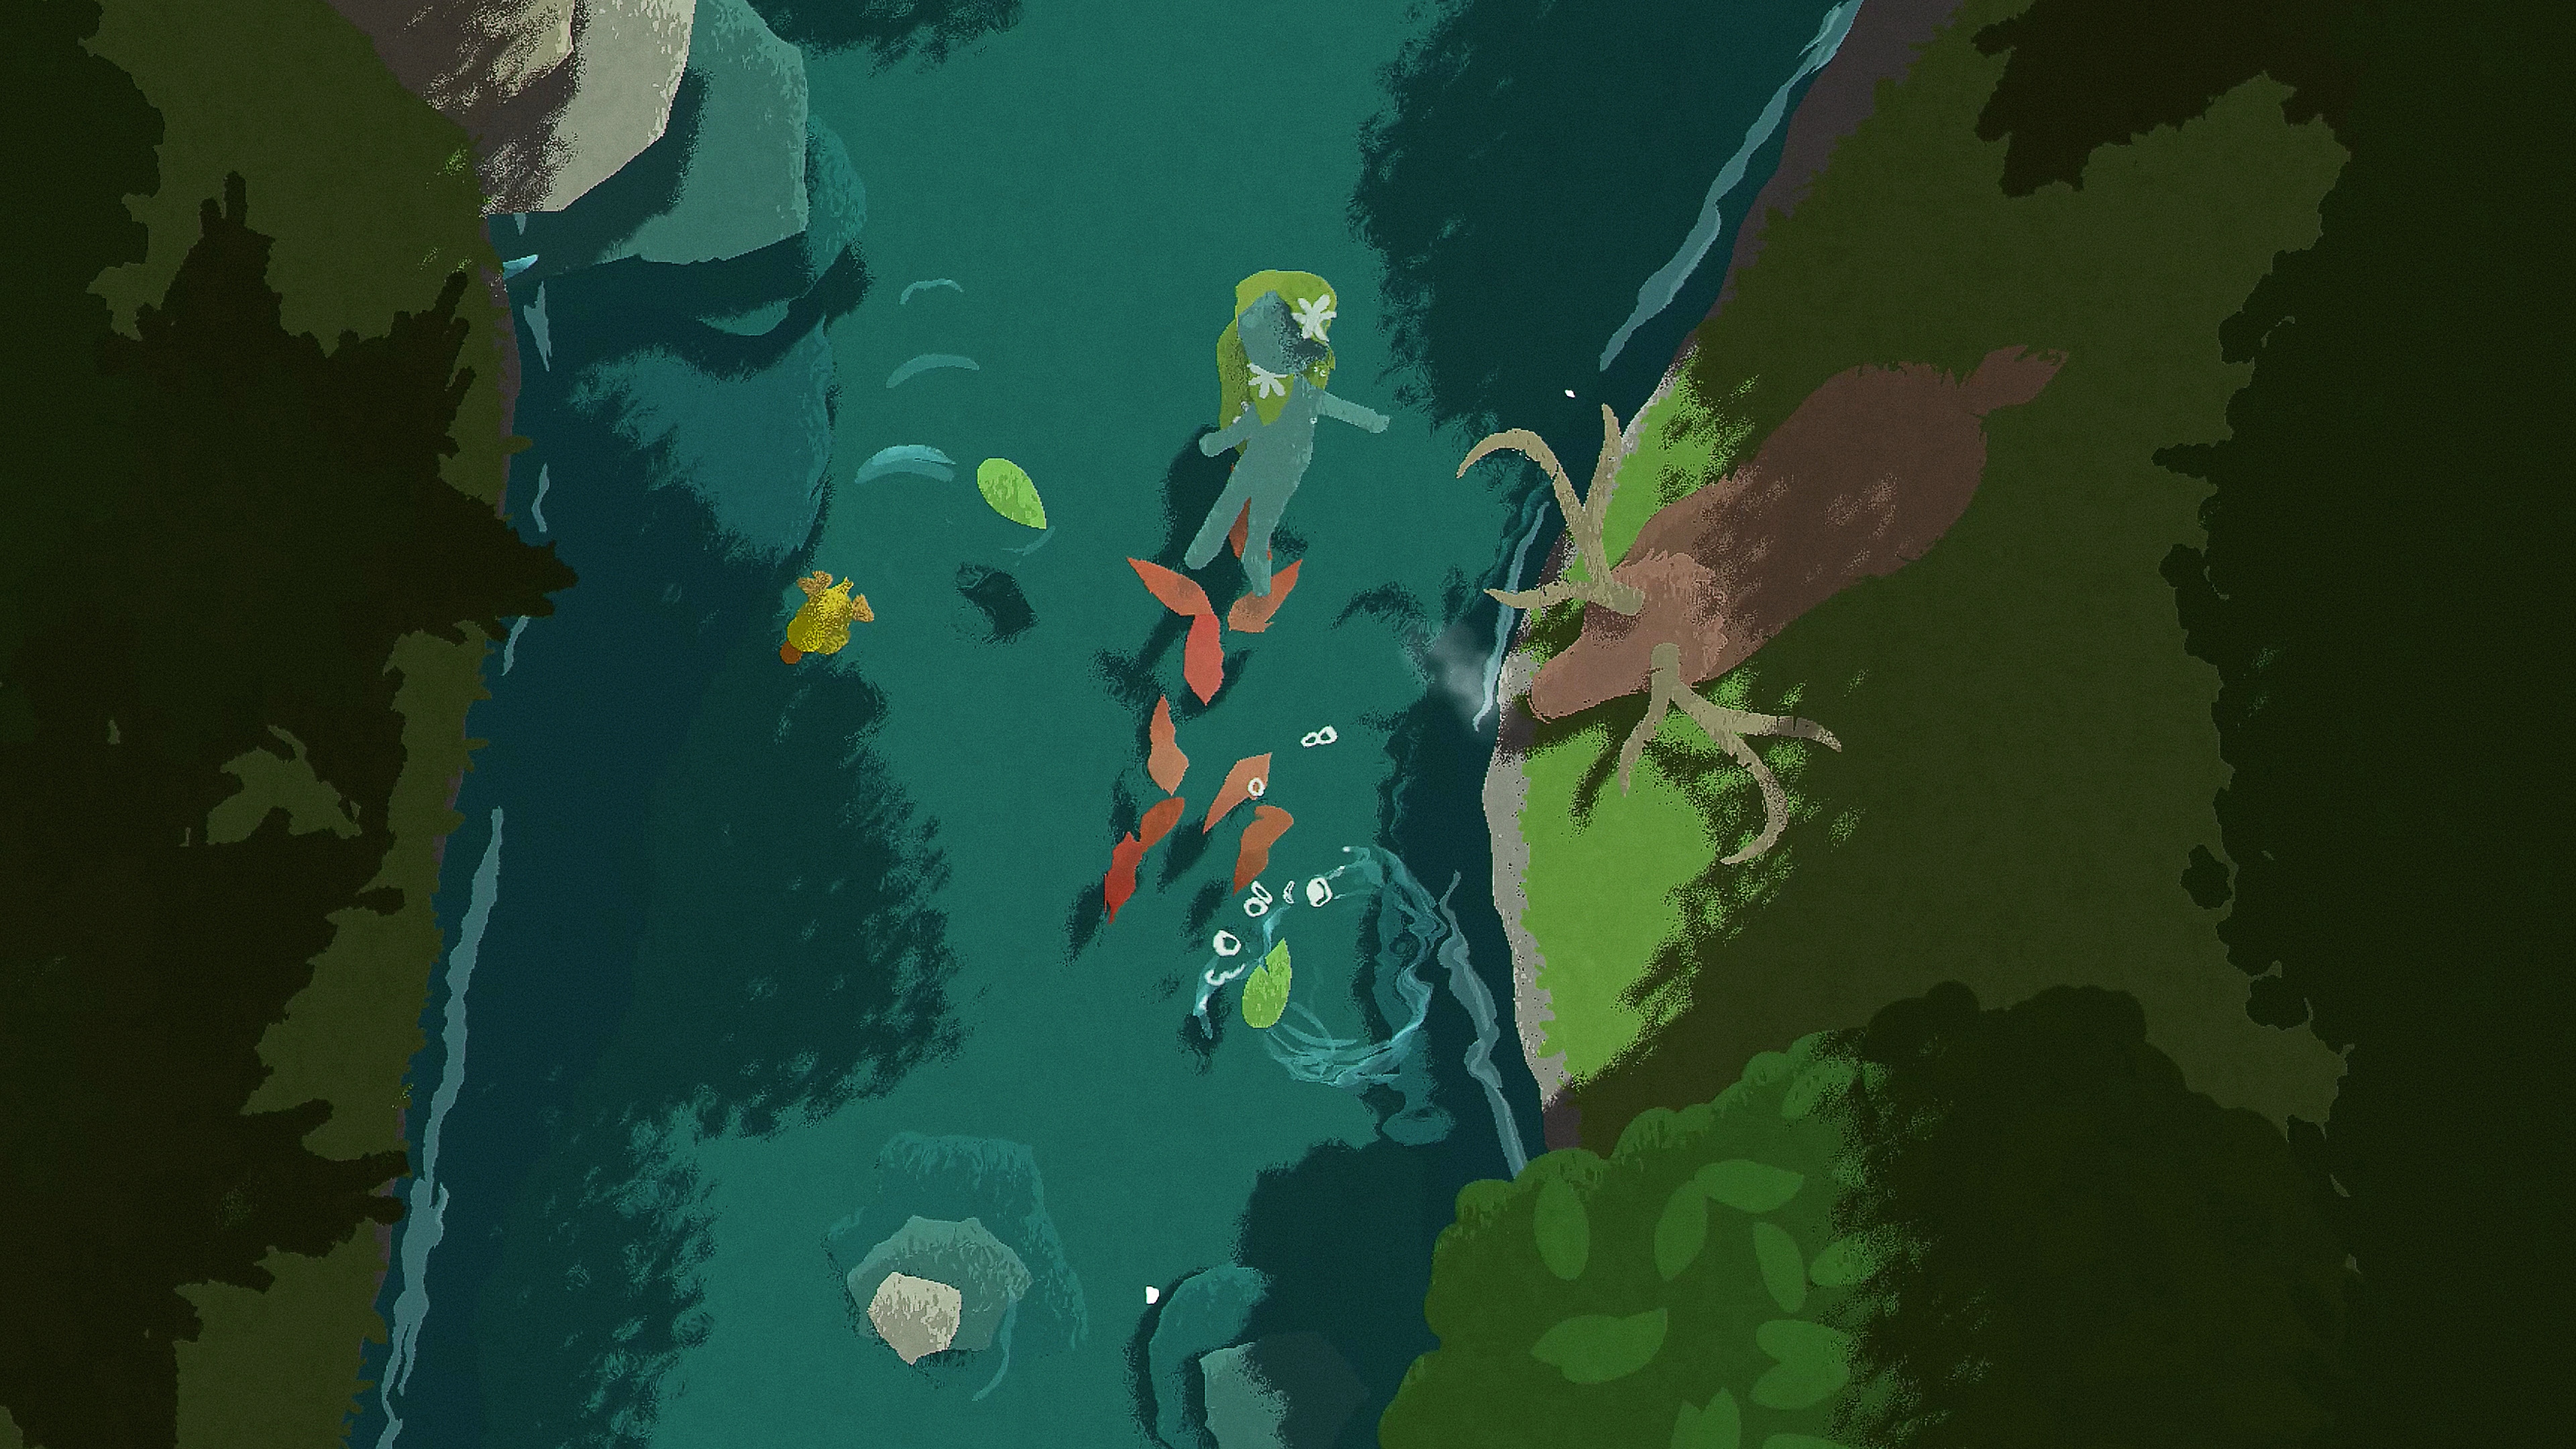 Naiad - Capture d'écran montrant un personnage nageant dans une rivière et un cerf présent sur la berge